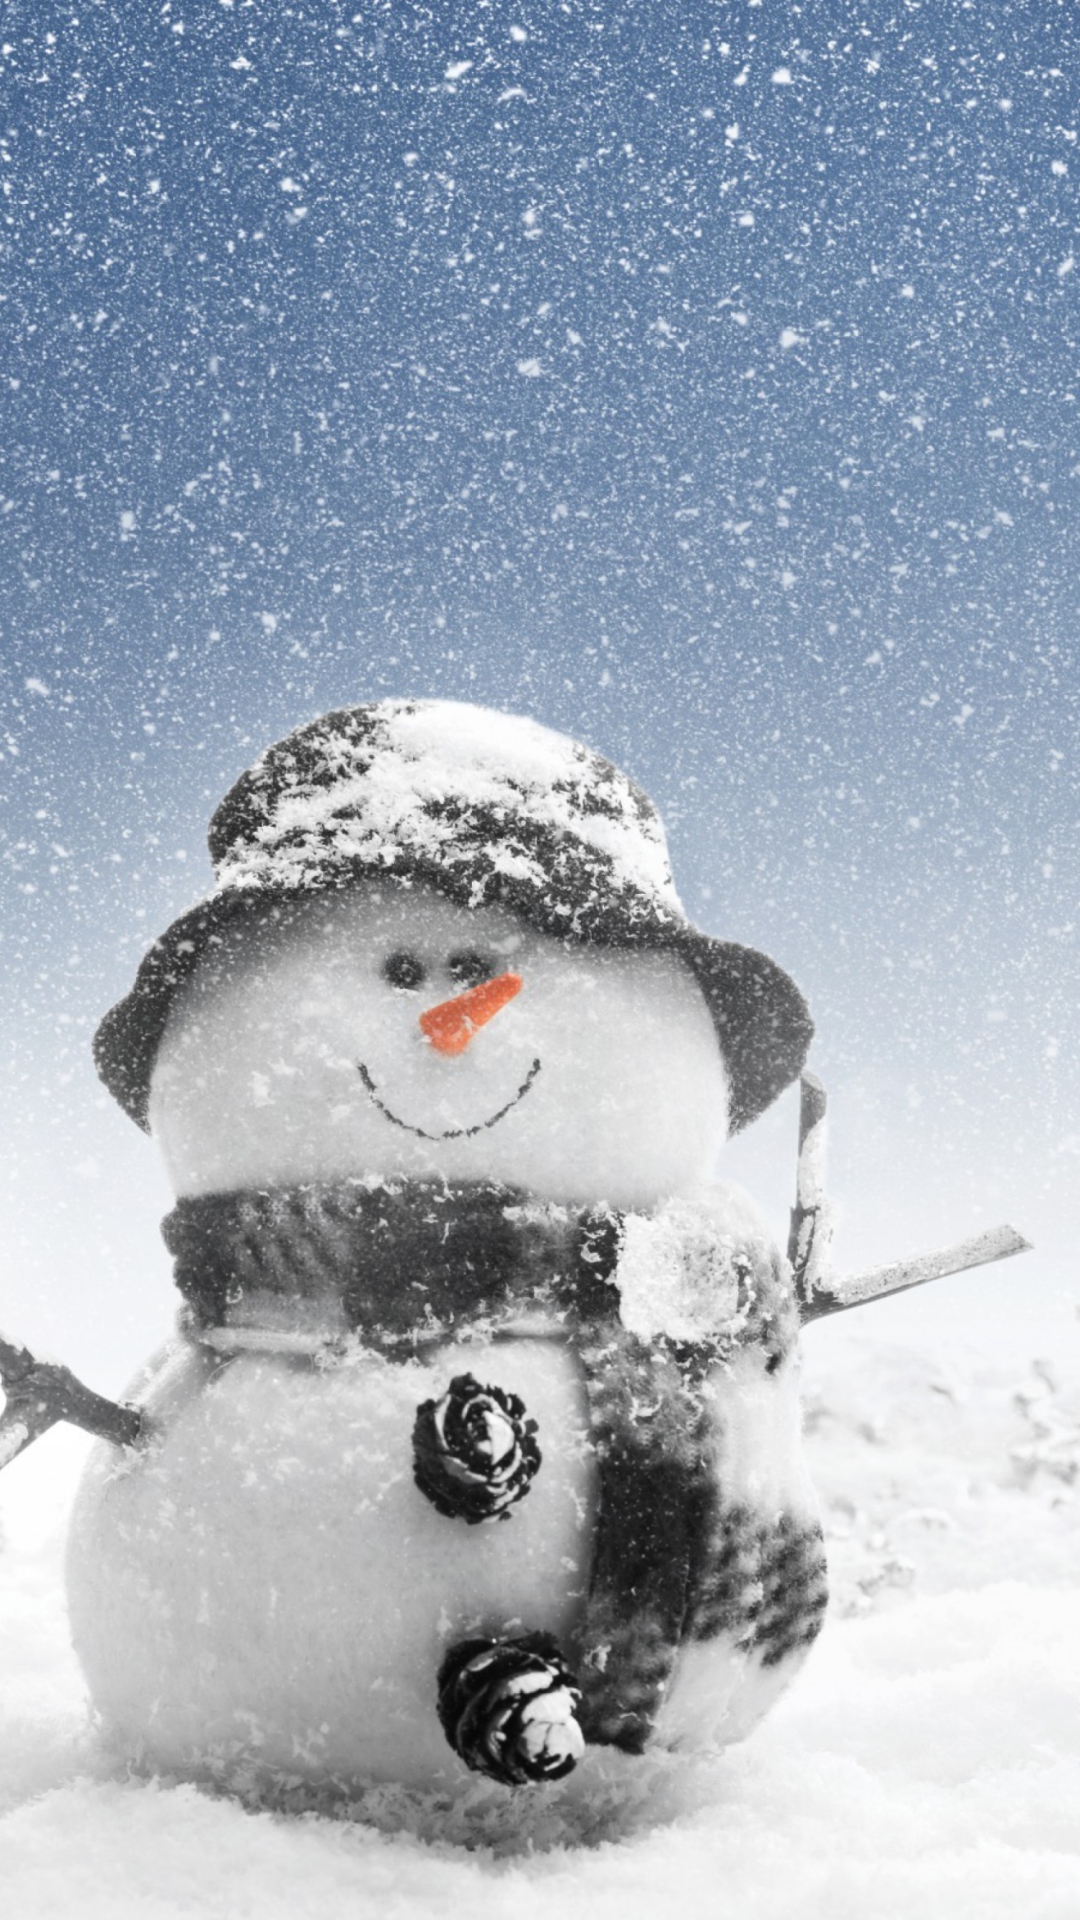 New Year Snowman wallpaper 1080x1920